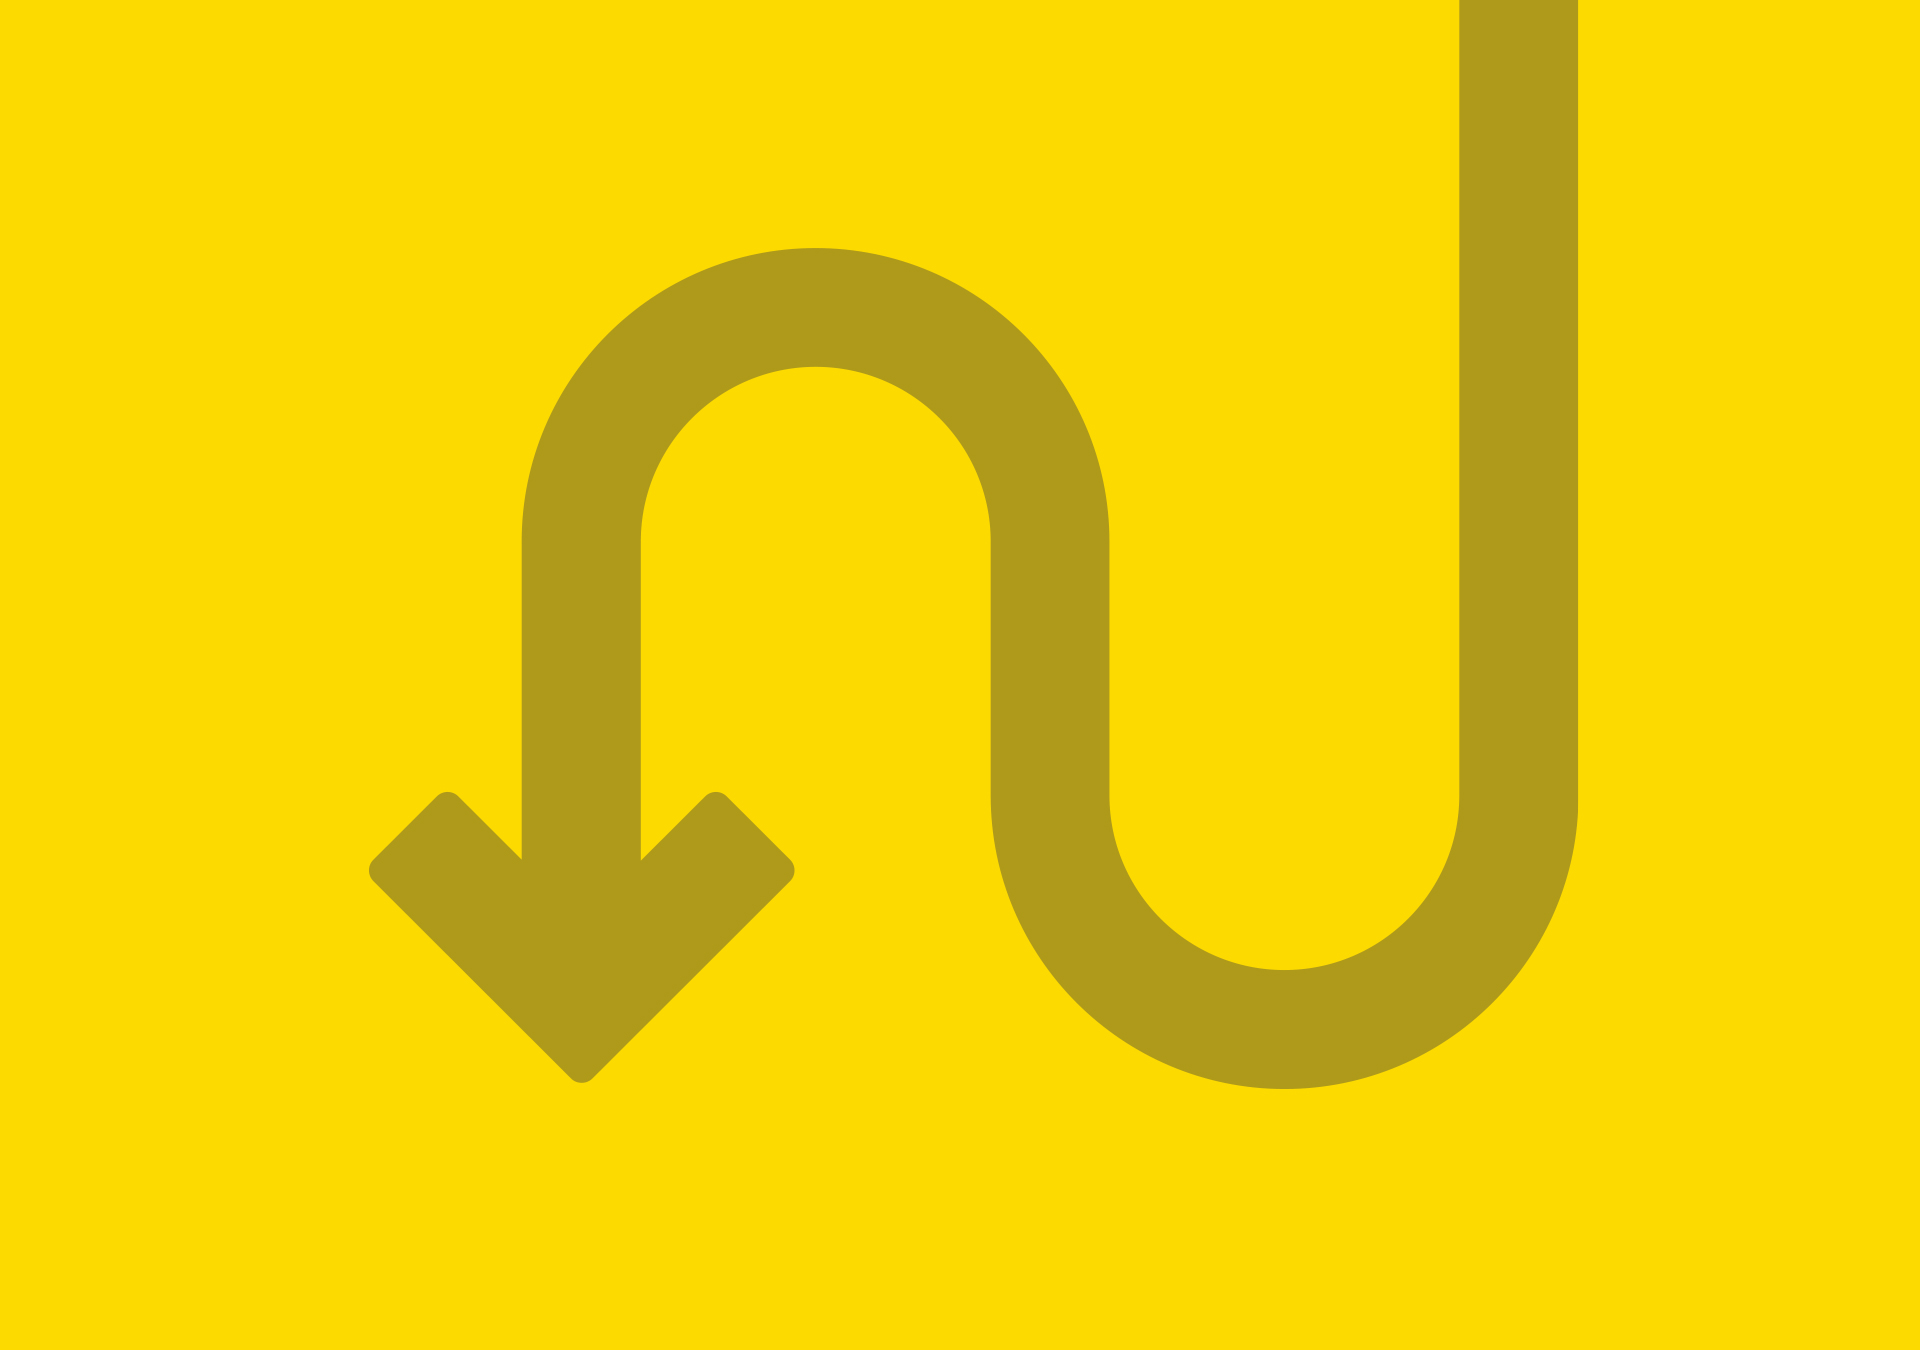 iFü Digitalführerschein Corporate Design Geschwungener Pfeil in gold auf gelbem Hintergrund 